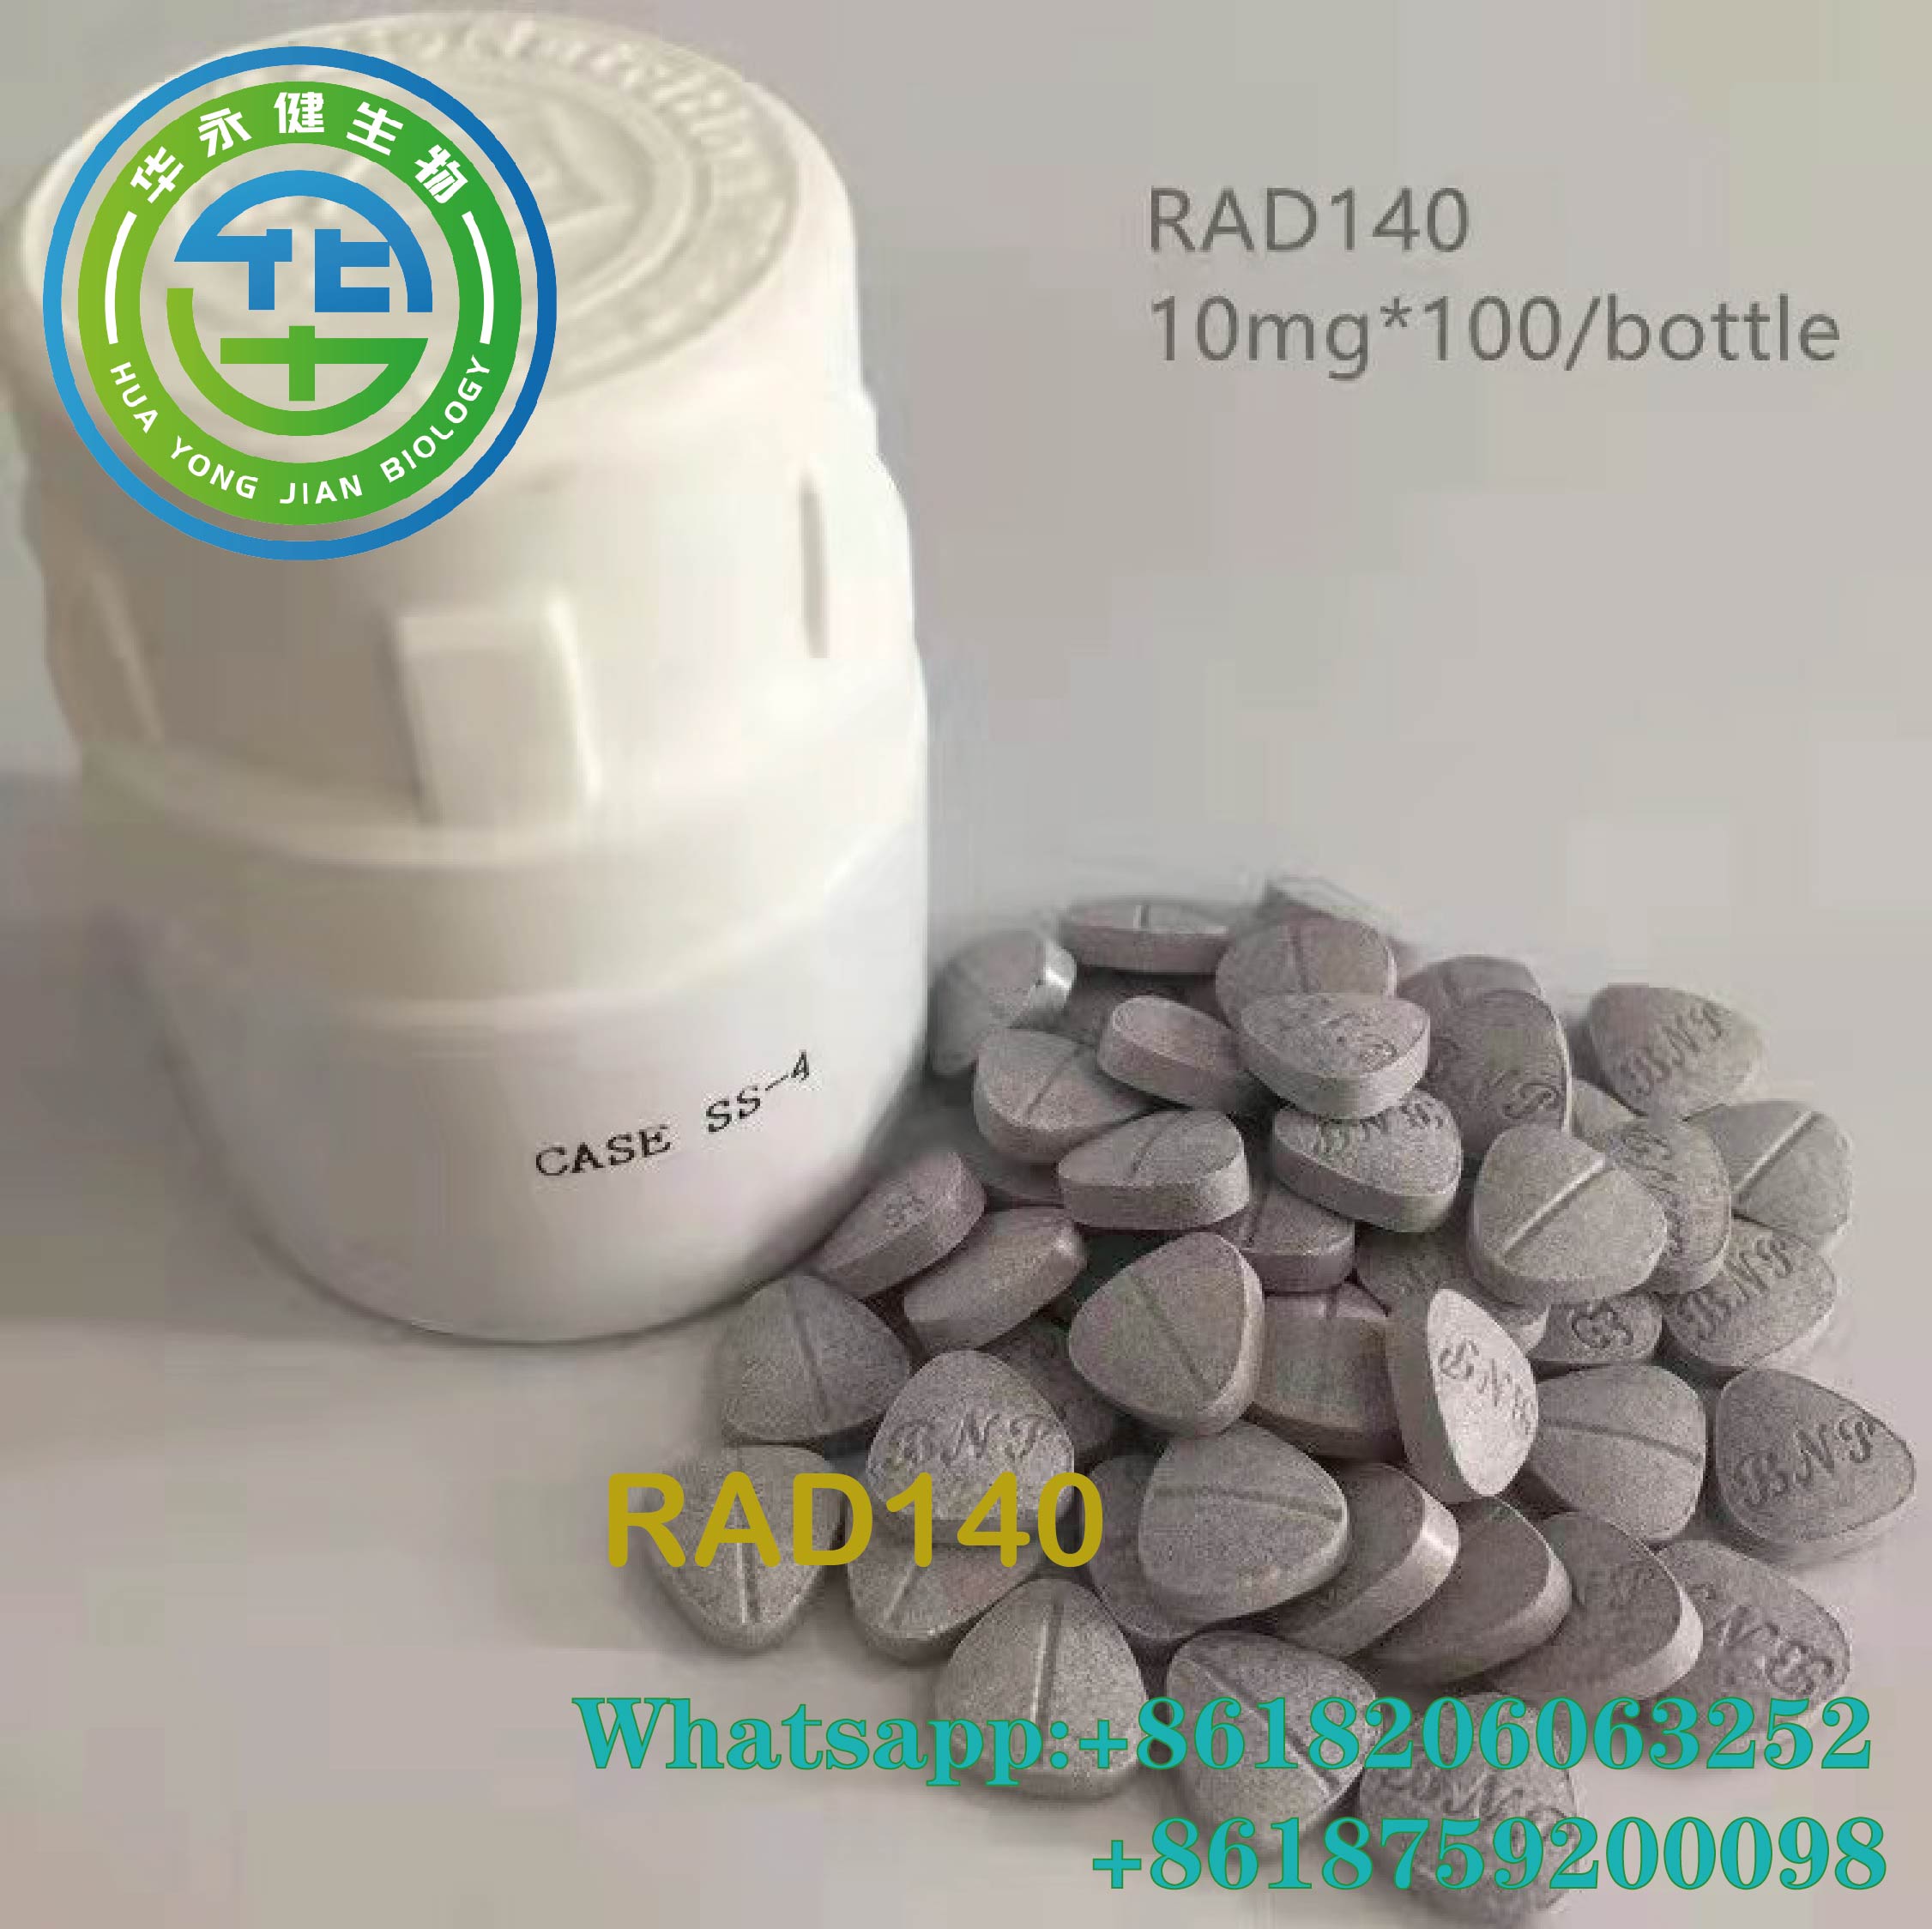 Testolon anabolic oral 10mg*100/sticlă Comprimate Steroizi Sarms Pulbere brută RAD140 pastile Imagine prezentată